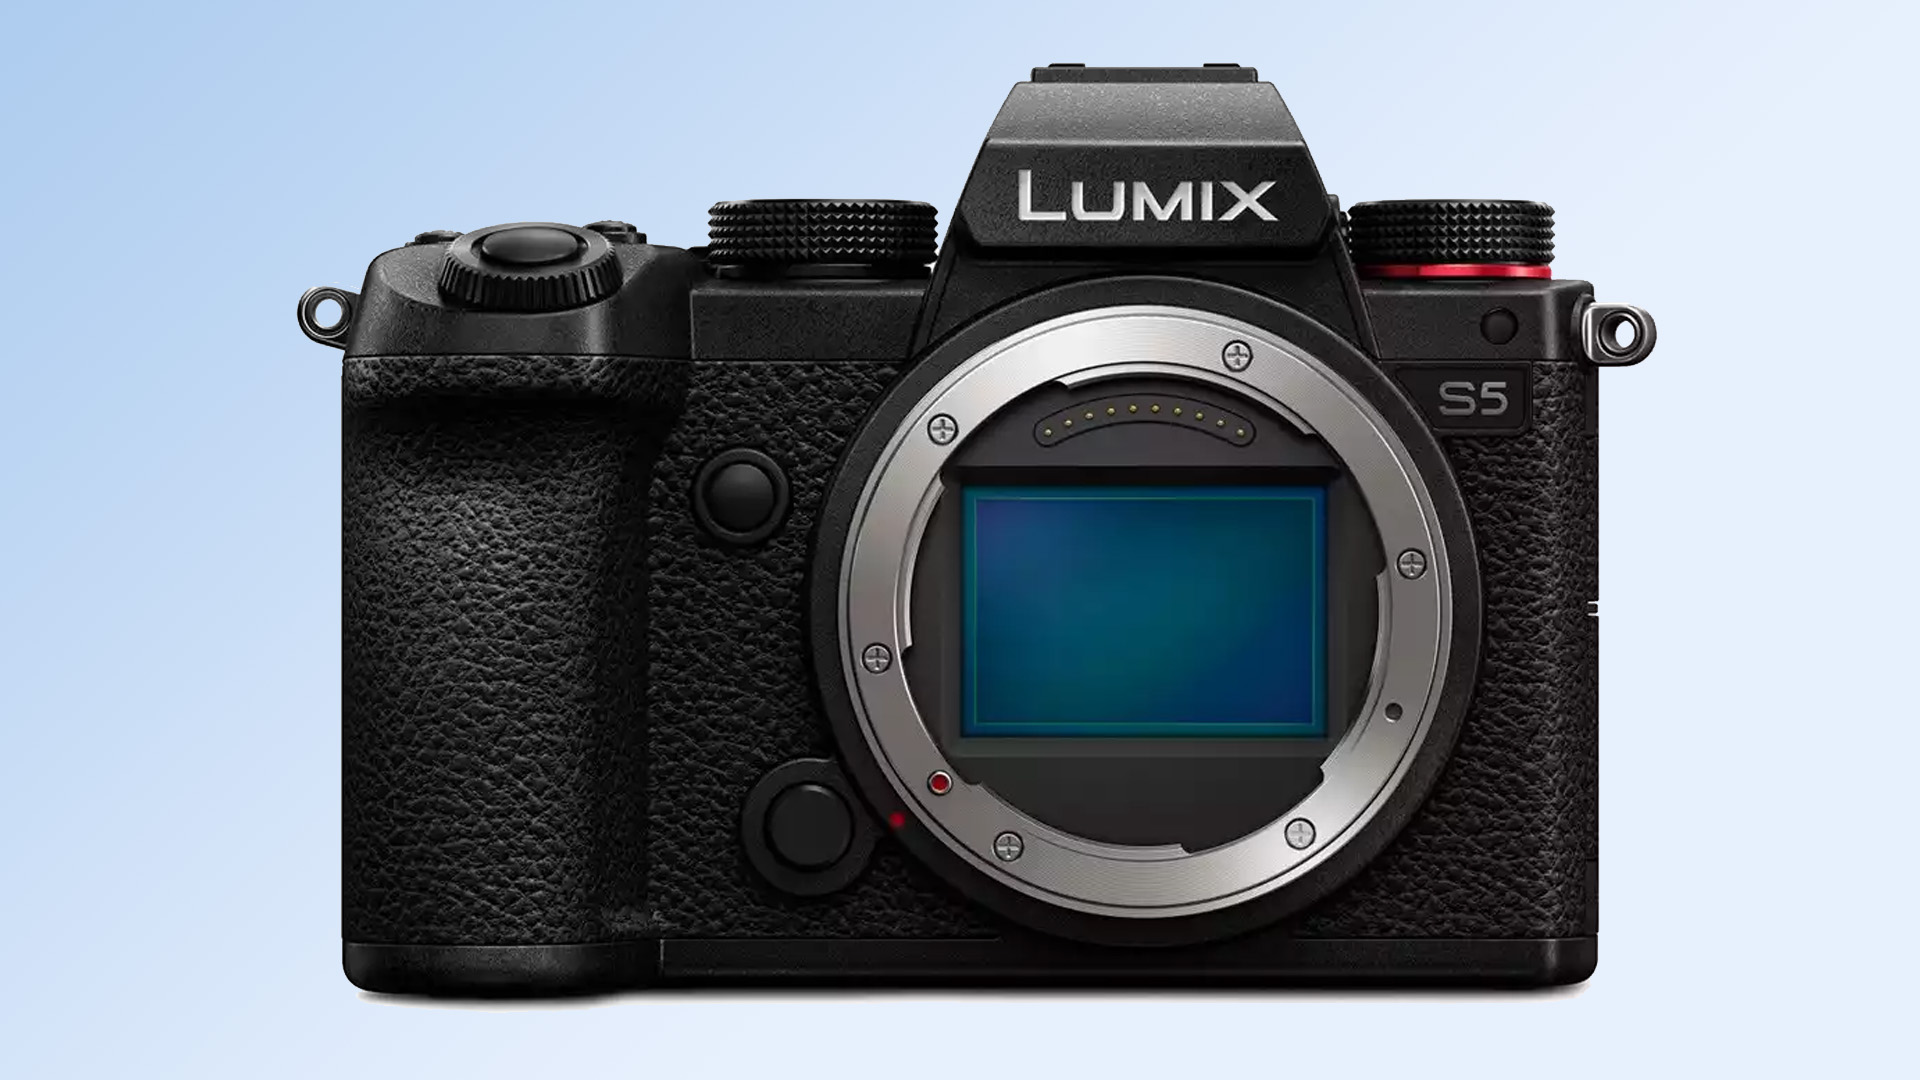 Panasonic Камера Lumix S5 на синем фоне